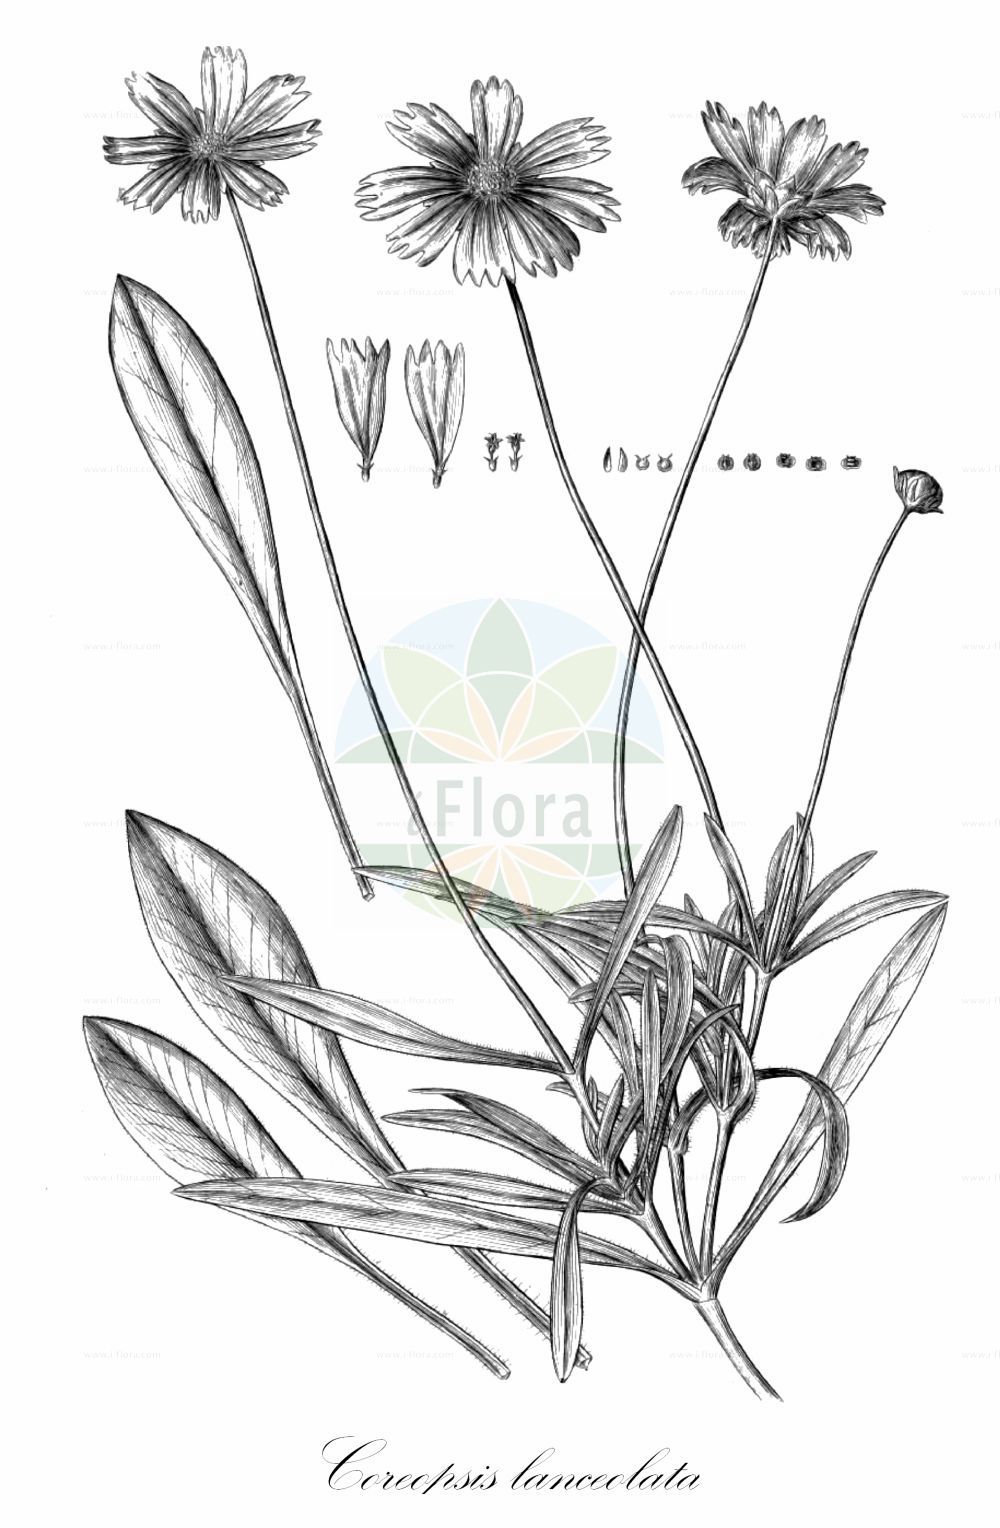 Historische Abbildung von Coreopsis lanceolata (Garten-Mädchenauge - Lanceleaf Tickseed). Das Bild zeigt Blatt, Bluete, Frucht und Same. ---- Historical Drawing of Coreopsis lanceolata (Garten-Mädchenauge - Lanceleaf Tickseed). The image is showing leaf, flower, fruit and seed.(Coreopsis lanceolata,Garten-Mädchenauge,Lanceleaf Tickseed,Coreopsis lanceolata,Garten-Maedchenauge,Lanceleaf Tickseed,Tickseed,Lance Coreopis,Garden Coreopsis,Coreopsis,Mädchenauge,Tickseed,Asteraceae,Korbblütengewächse,Daisy family,Blatt,Bluete,Frucht,Same,leaf,flower,fruit,seed,Dillenius (1732))